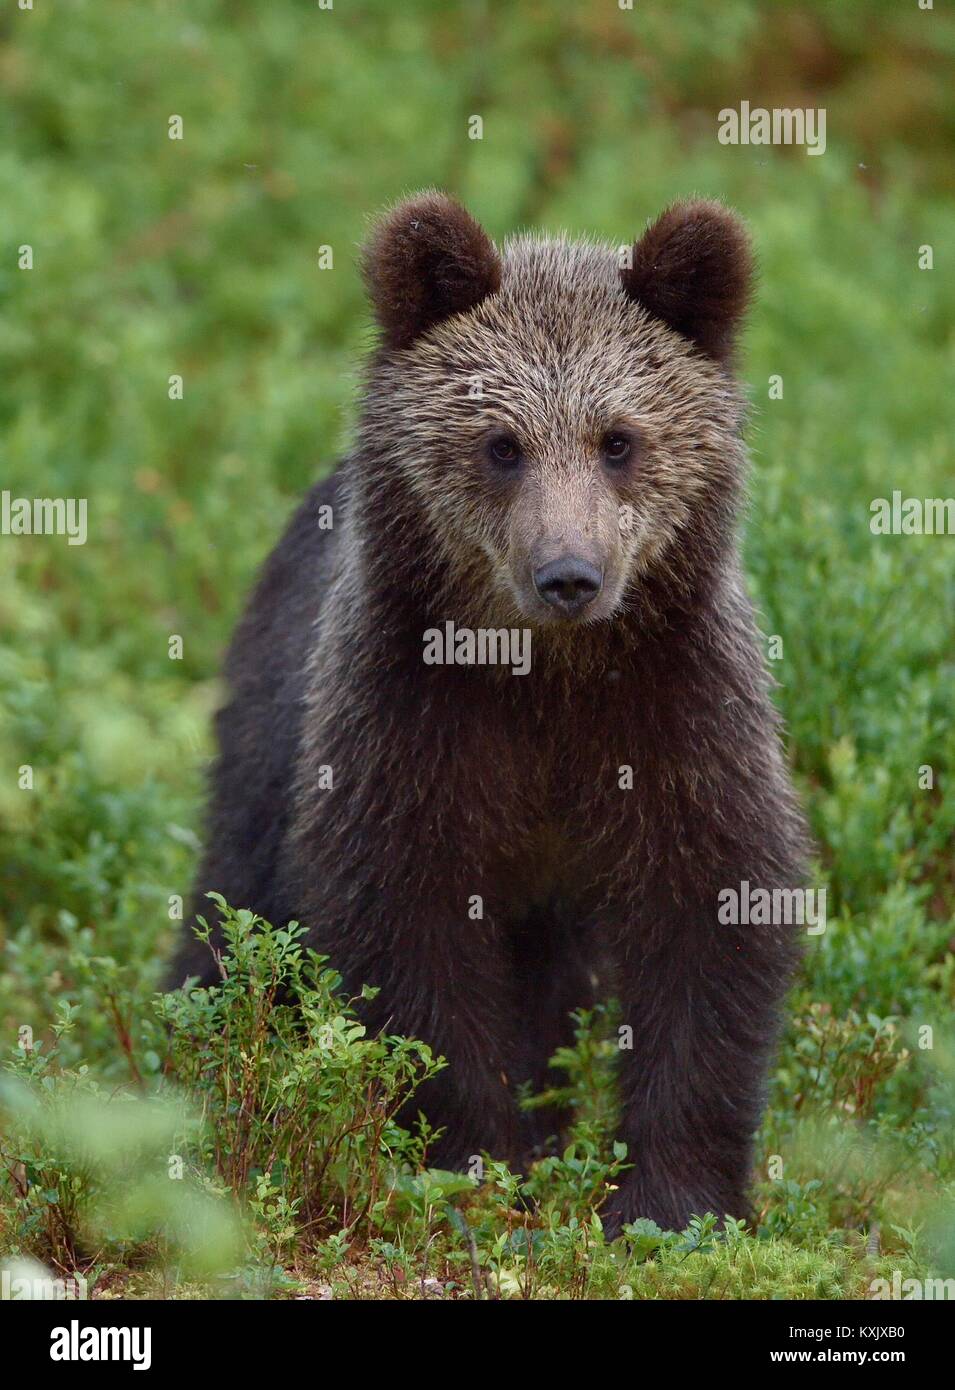 Cub de l'ours brun (Ursus arctos arctos) dans la forêt de l'été. Fond vert naturel Banque D'Images